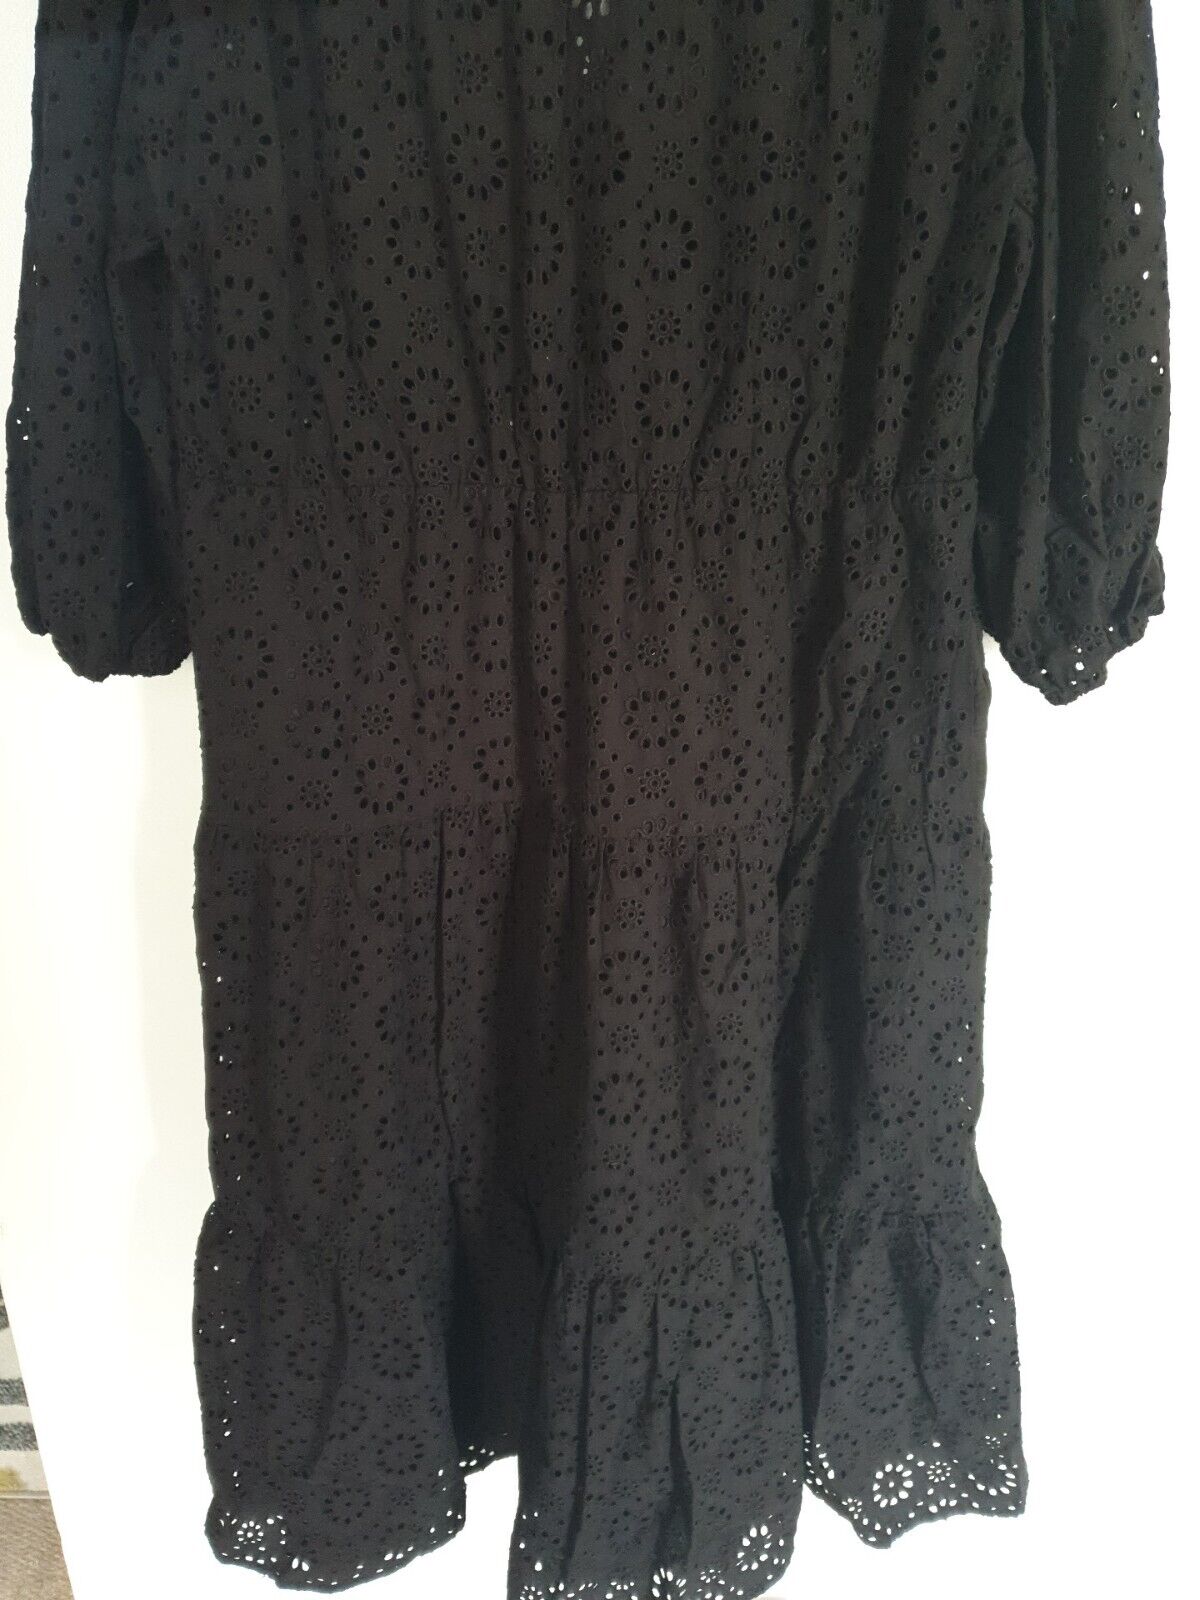 Michelle Keegan Black Button Through Dress UK 14 ****Ref SW18